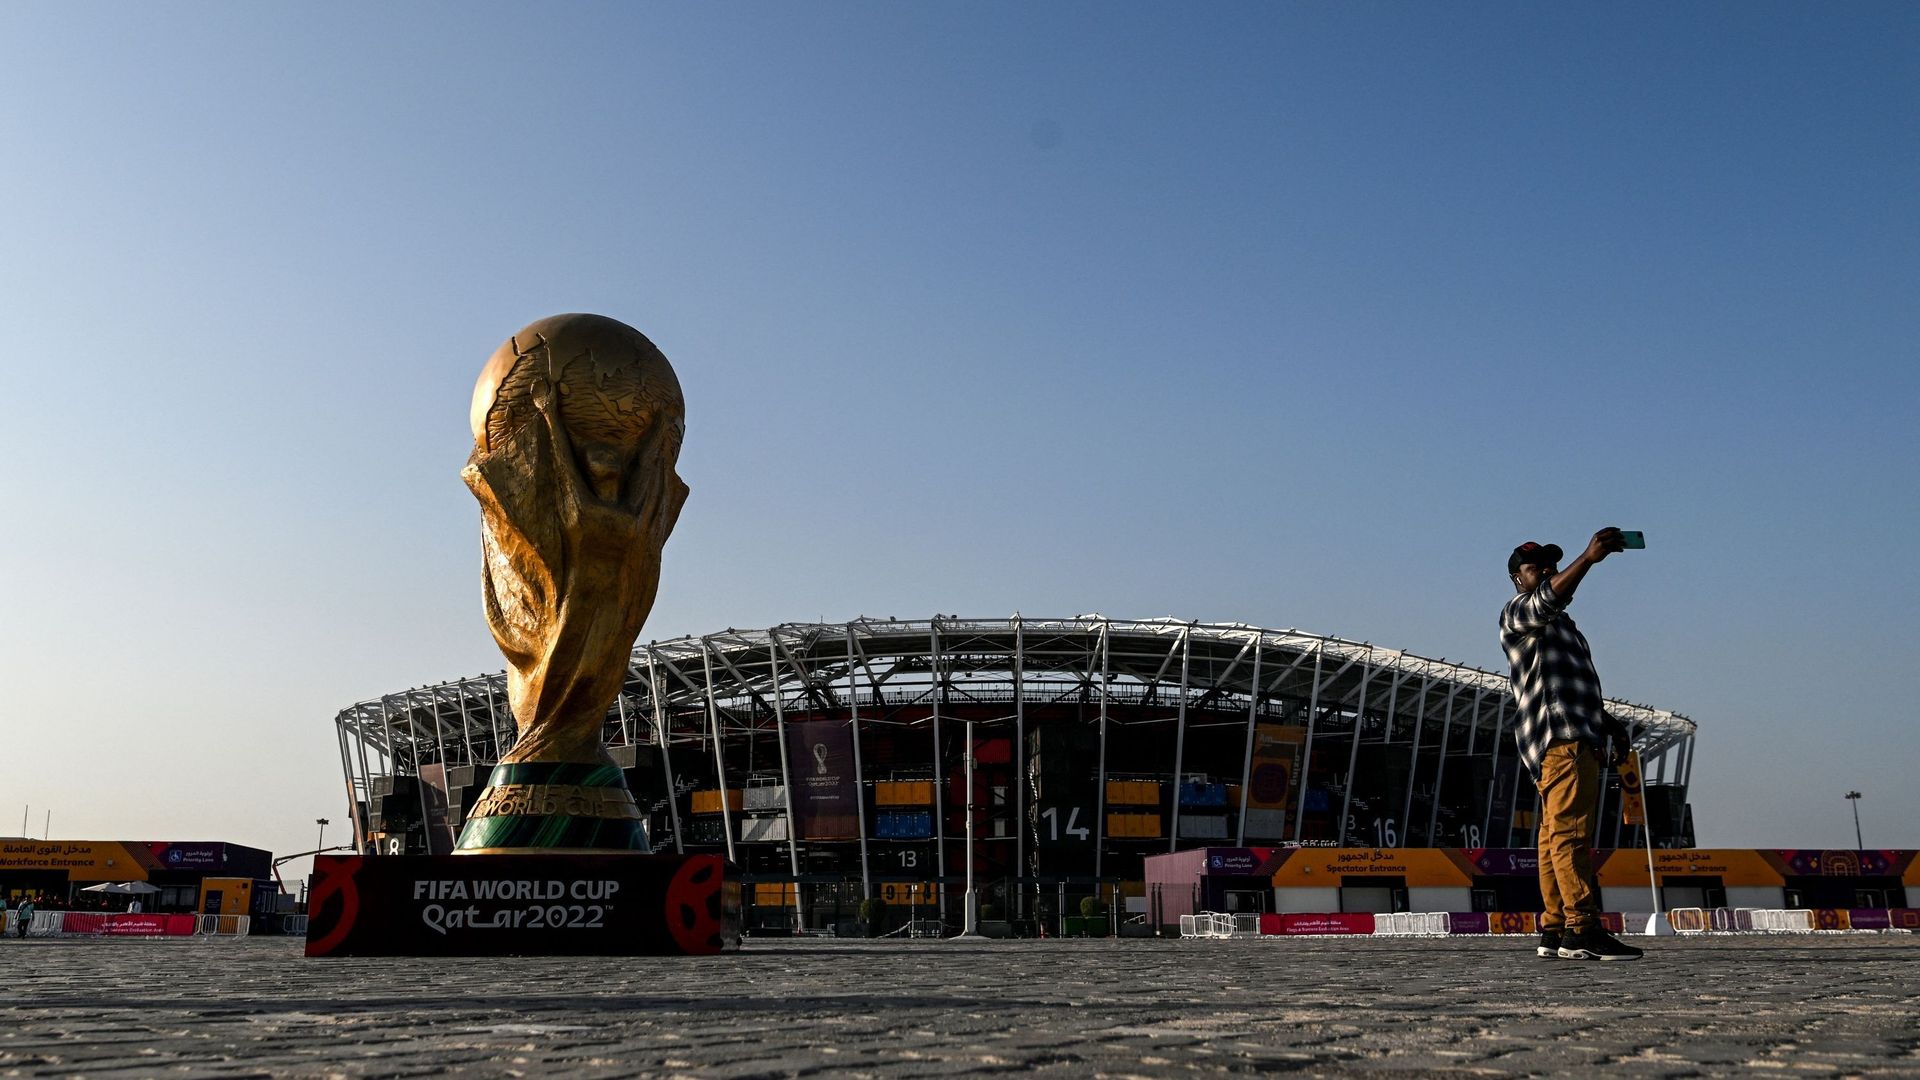 La Coupe du monde devrait revenir au Brésil selon les bookmakers.